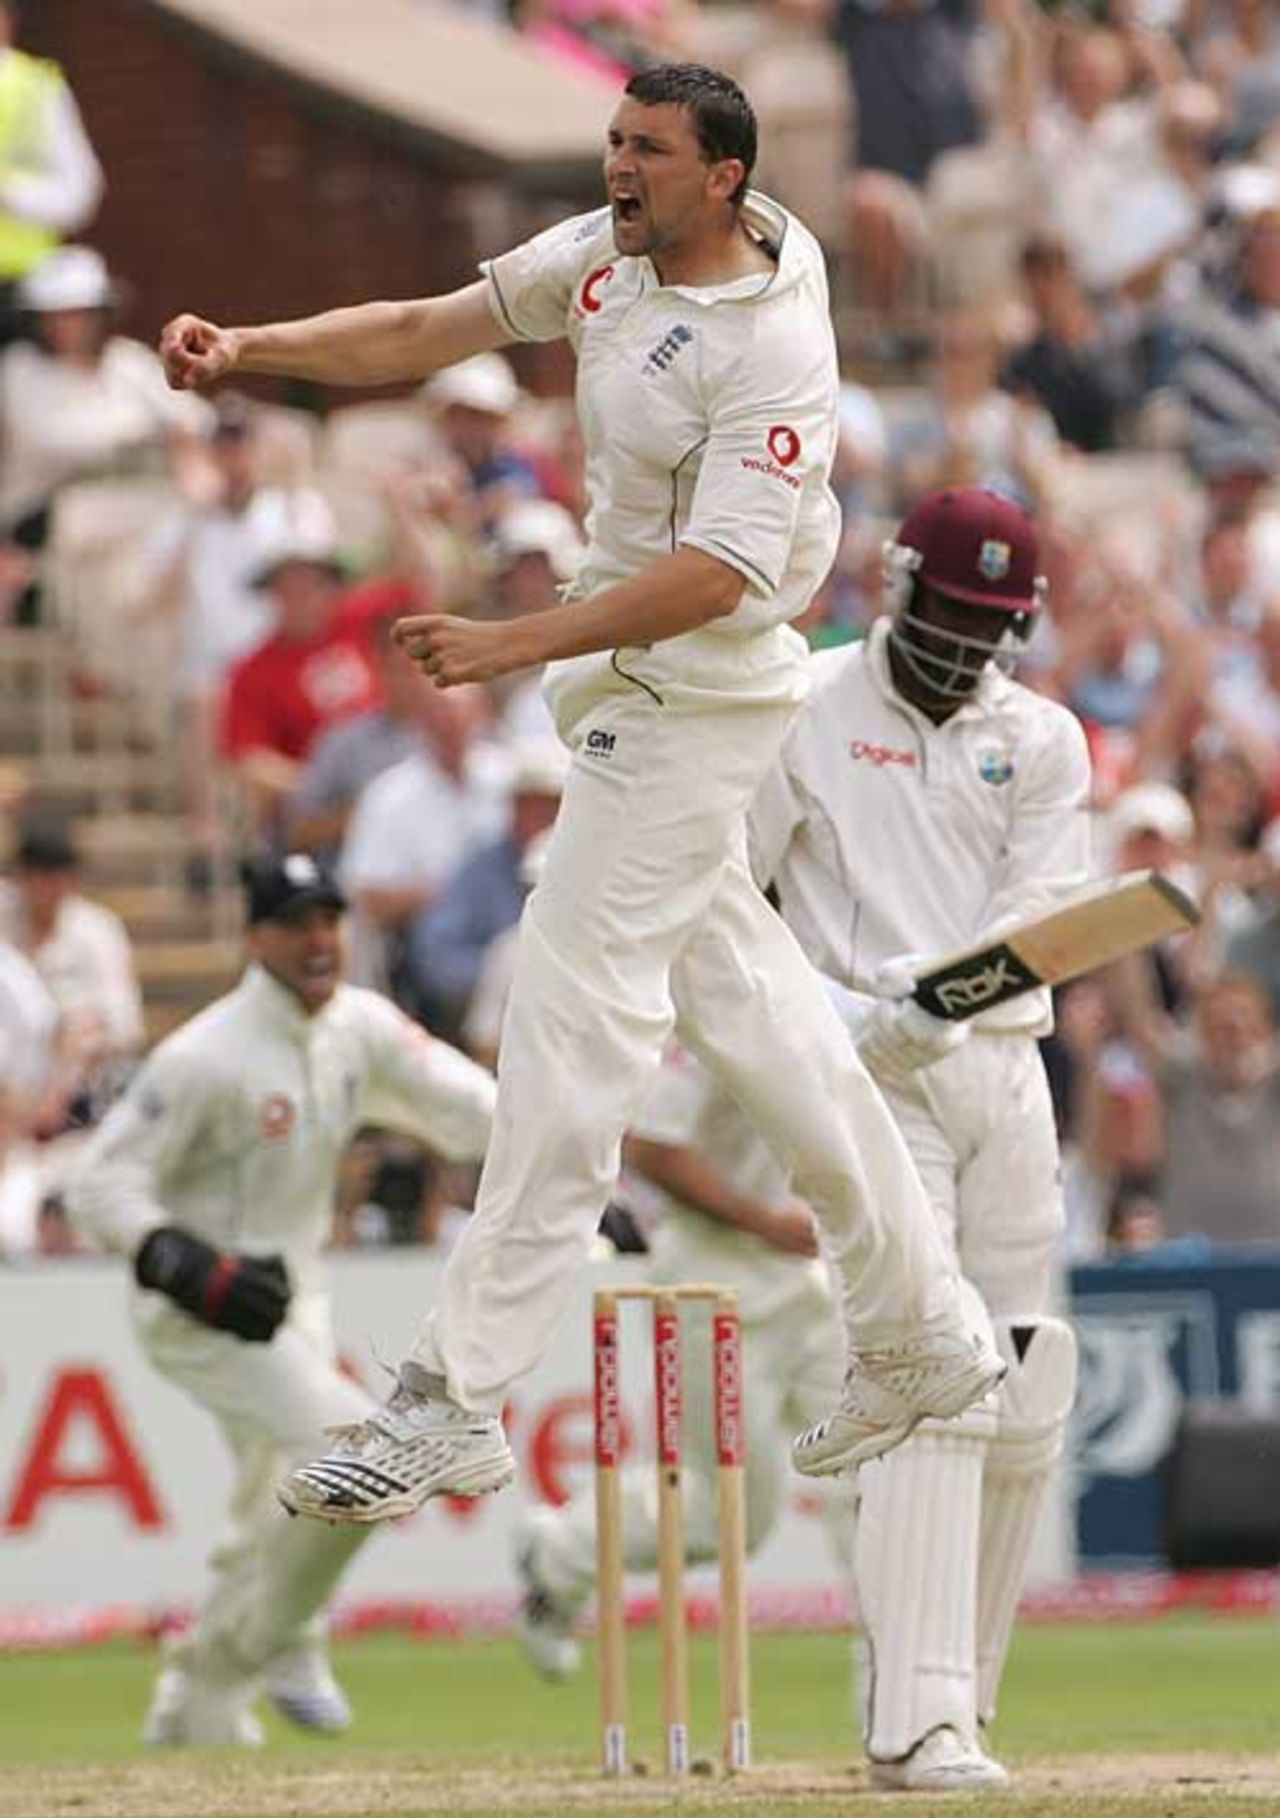 Steve Harmison jumps in celebration after removing Chris Gayle, England v West Indies, 3rd Test, Old Trafford, June 10, 2007